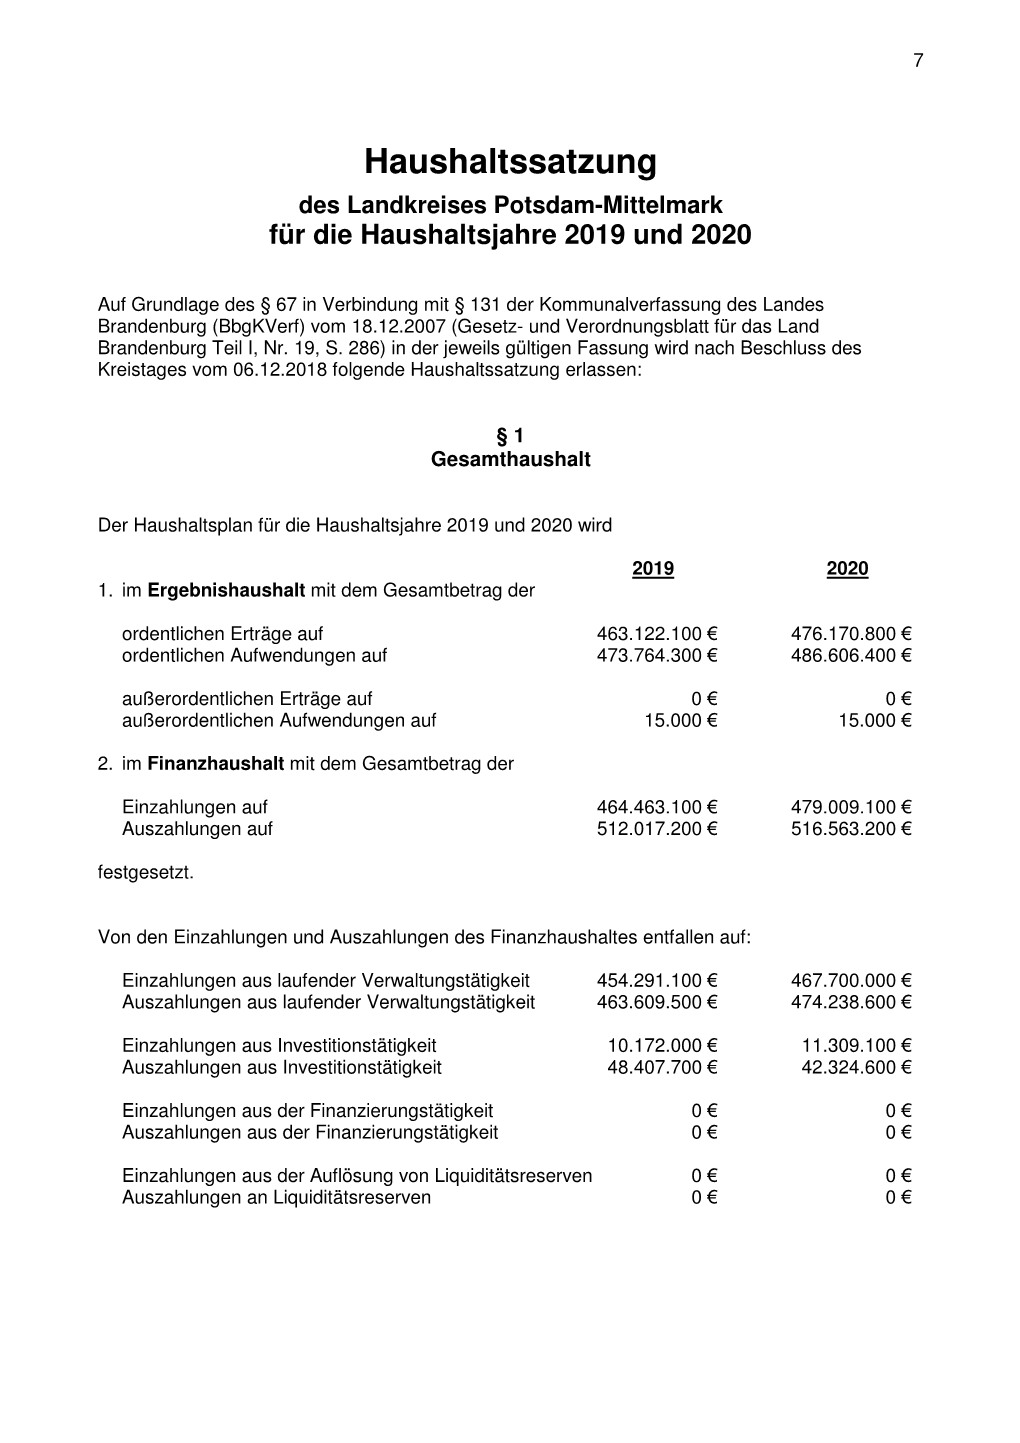 Haushaltssatzung Des Landkreises Potsdam-Mittelmark Für Die Haushaltsjahre 2019 Und 2020